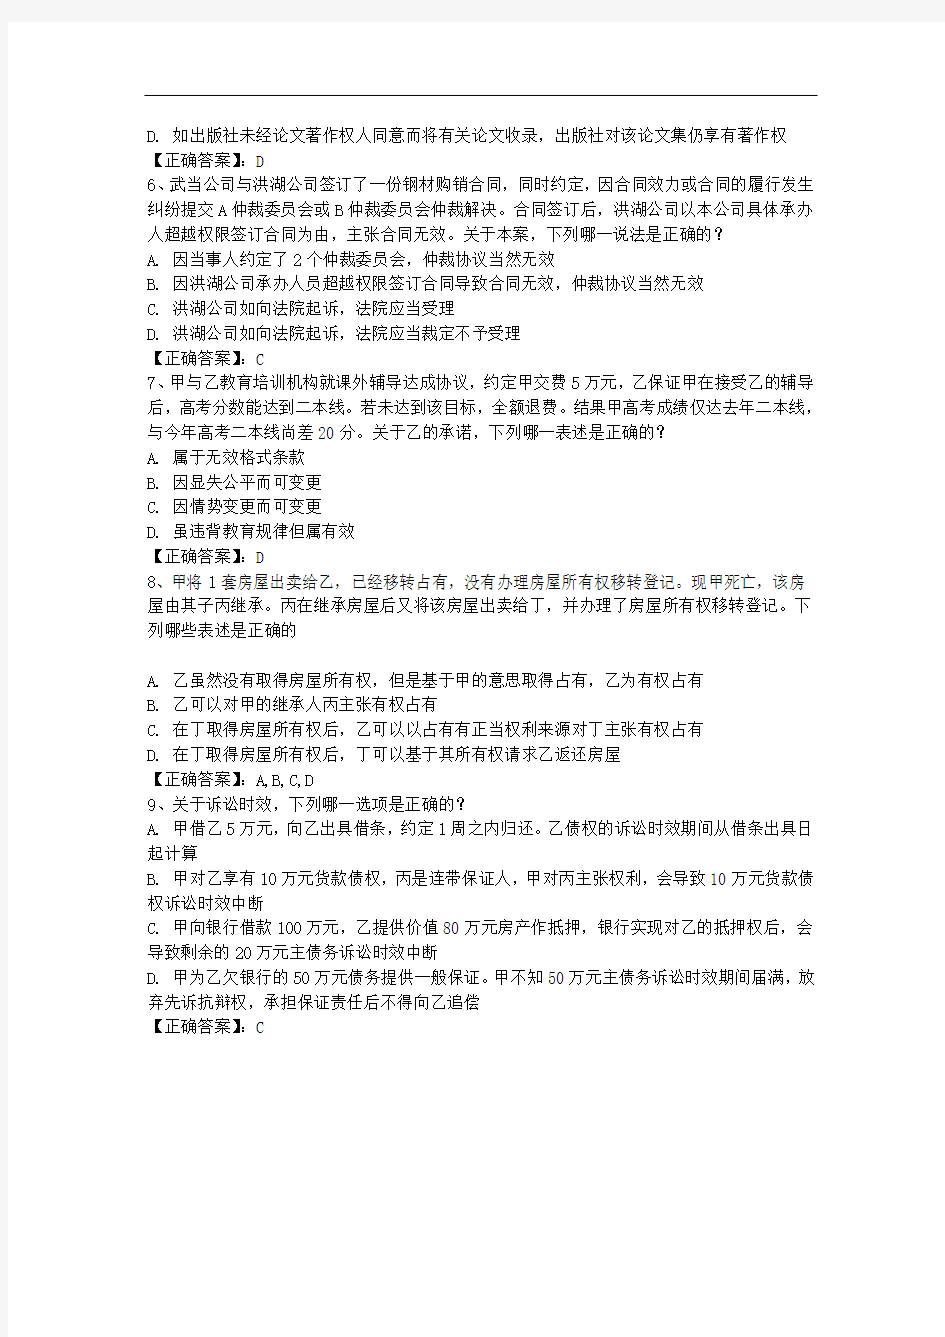 江西省司法考试《卷四》论述题复习要领总结每日一练(2014.4.11)